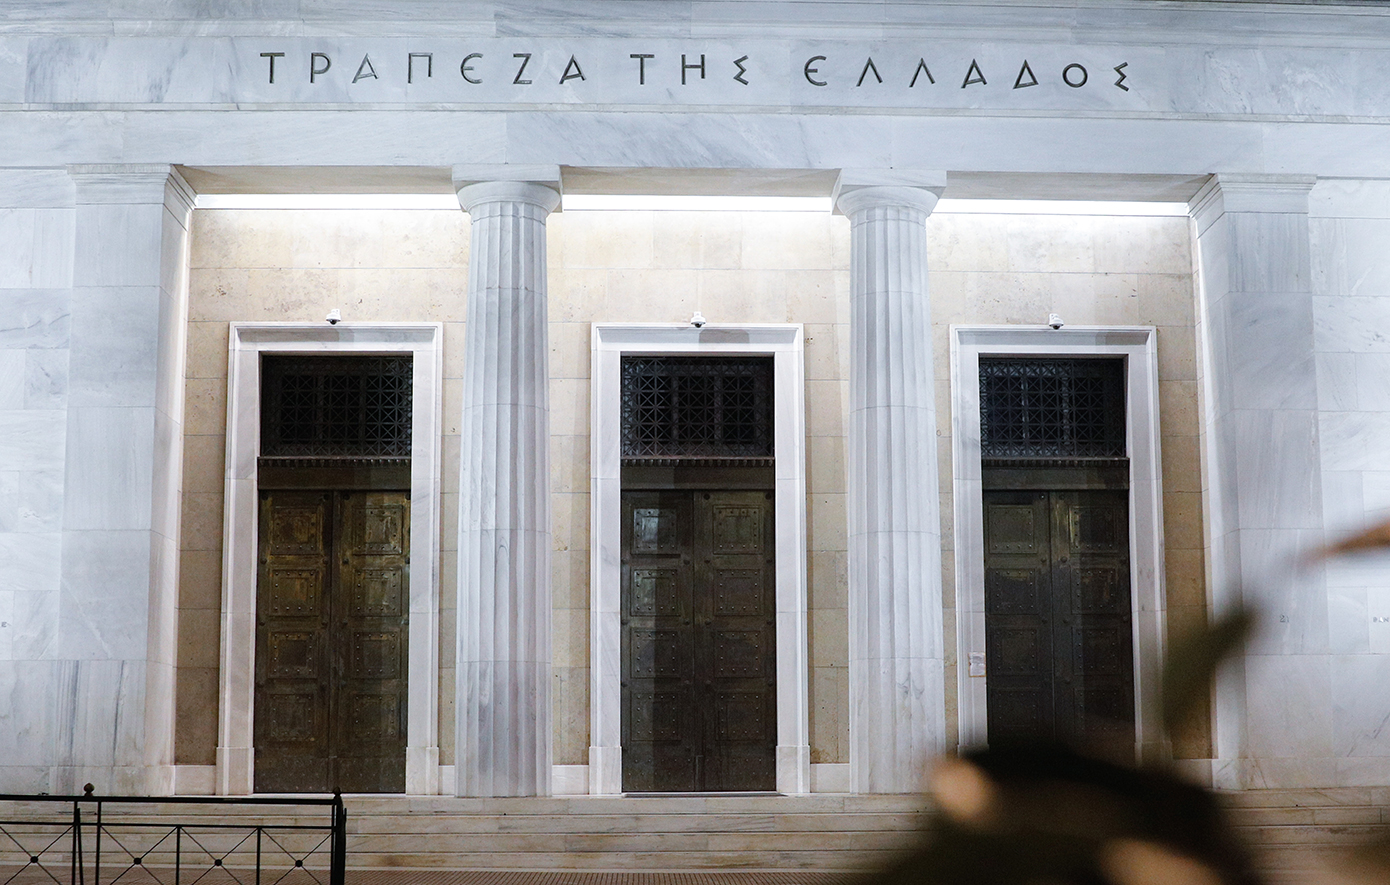 Τράπεζα της Ελλάδος: Διασφαλισμένη η βιωσιμότητα του Δημοσίου Χρέους έως το 2030